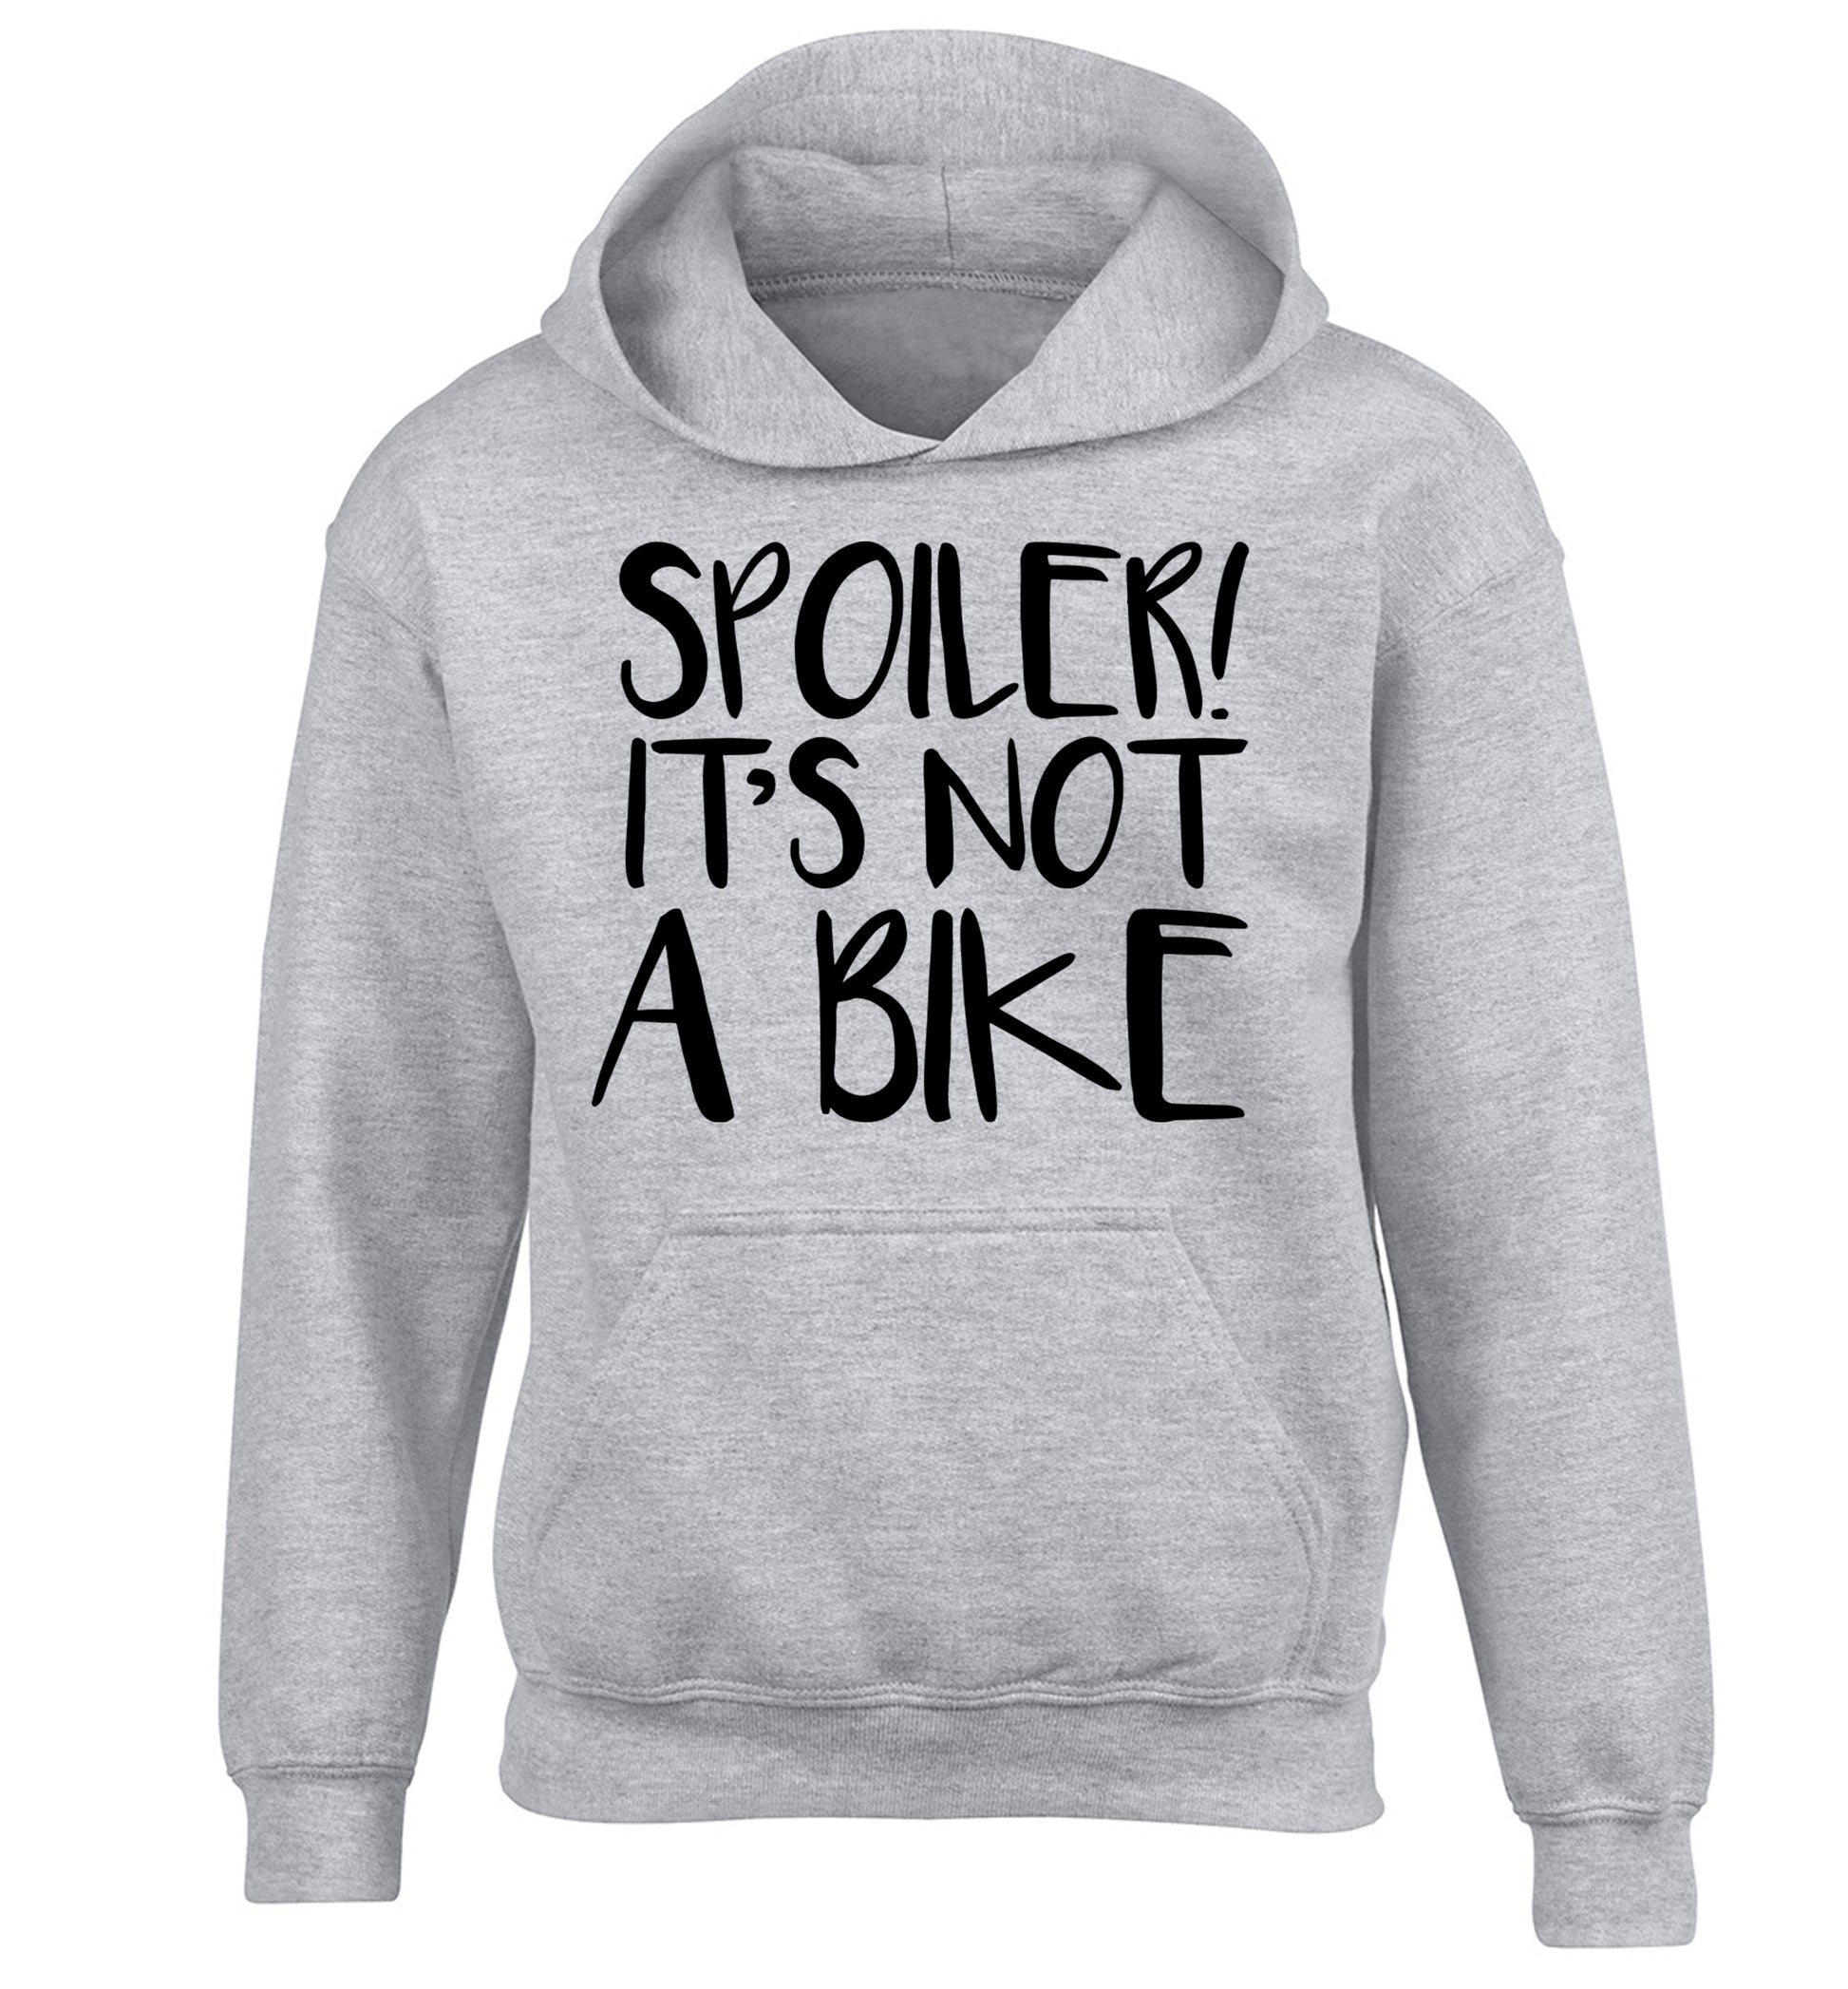 Spoiler it's not a bike children's grey hoodie 12-13 Years